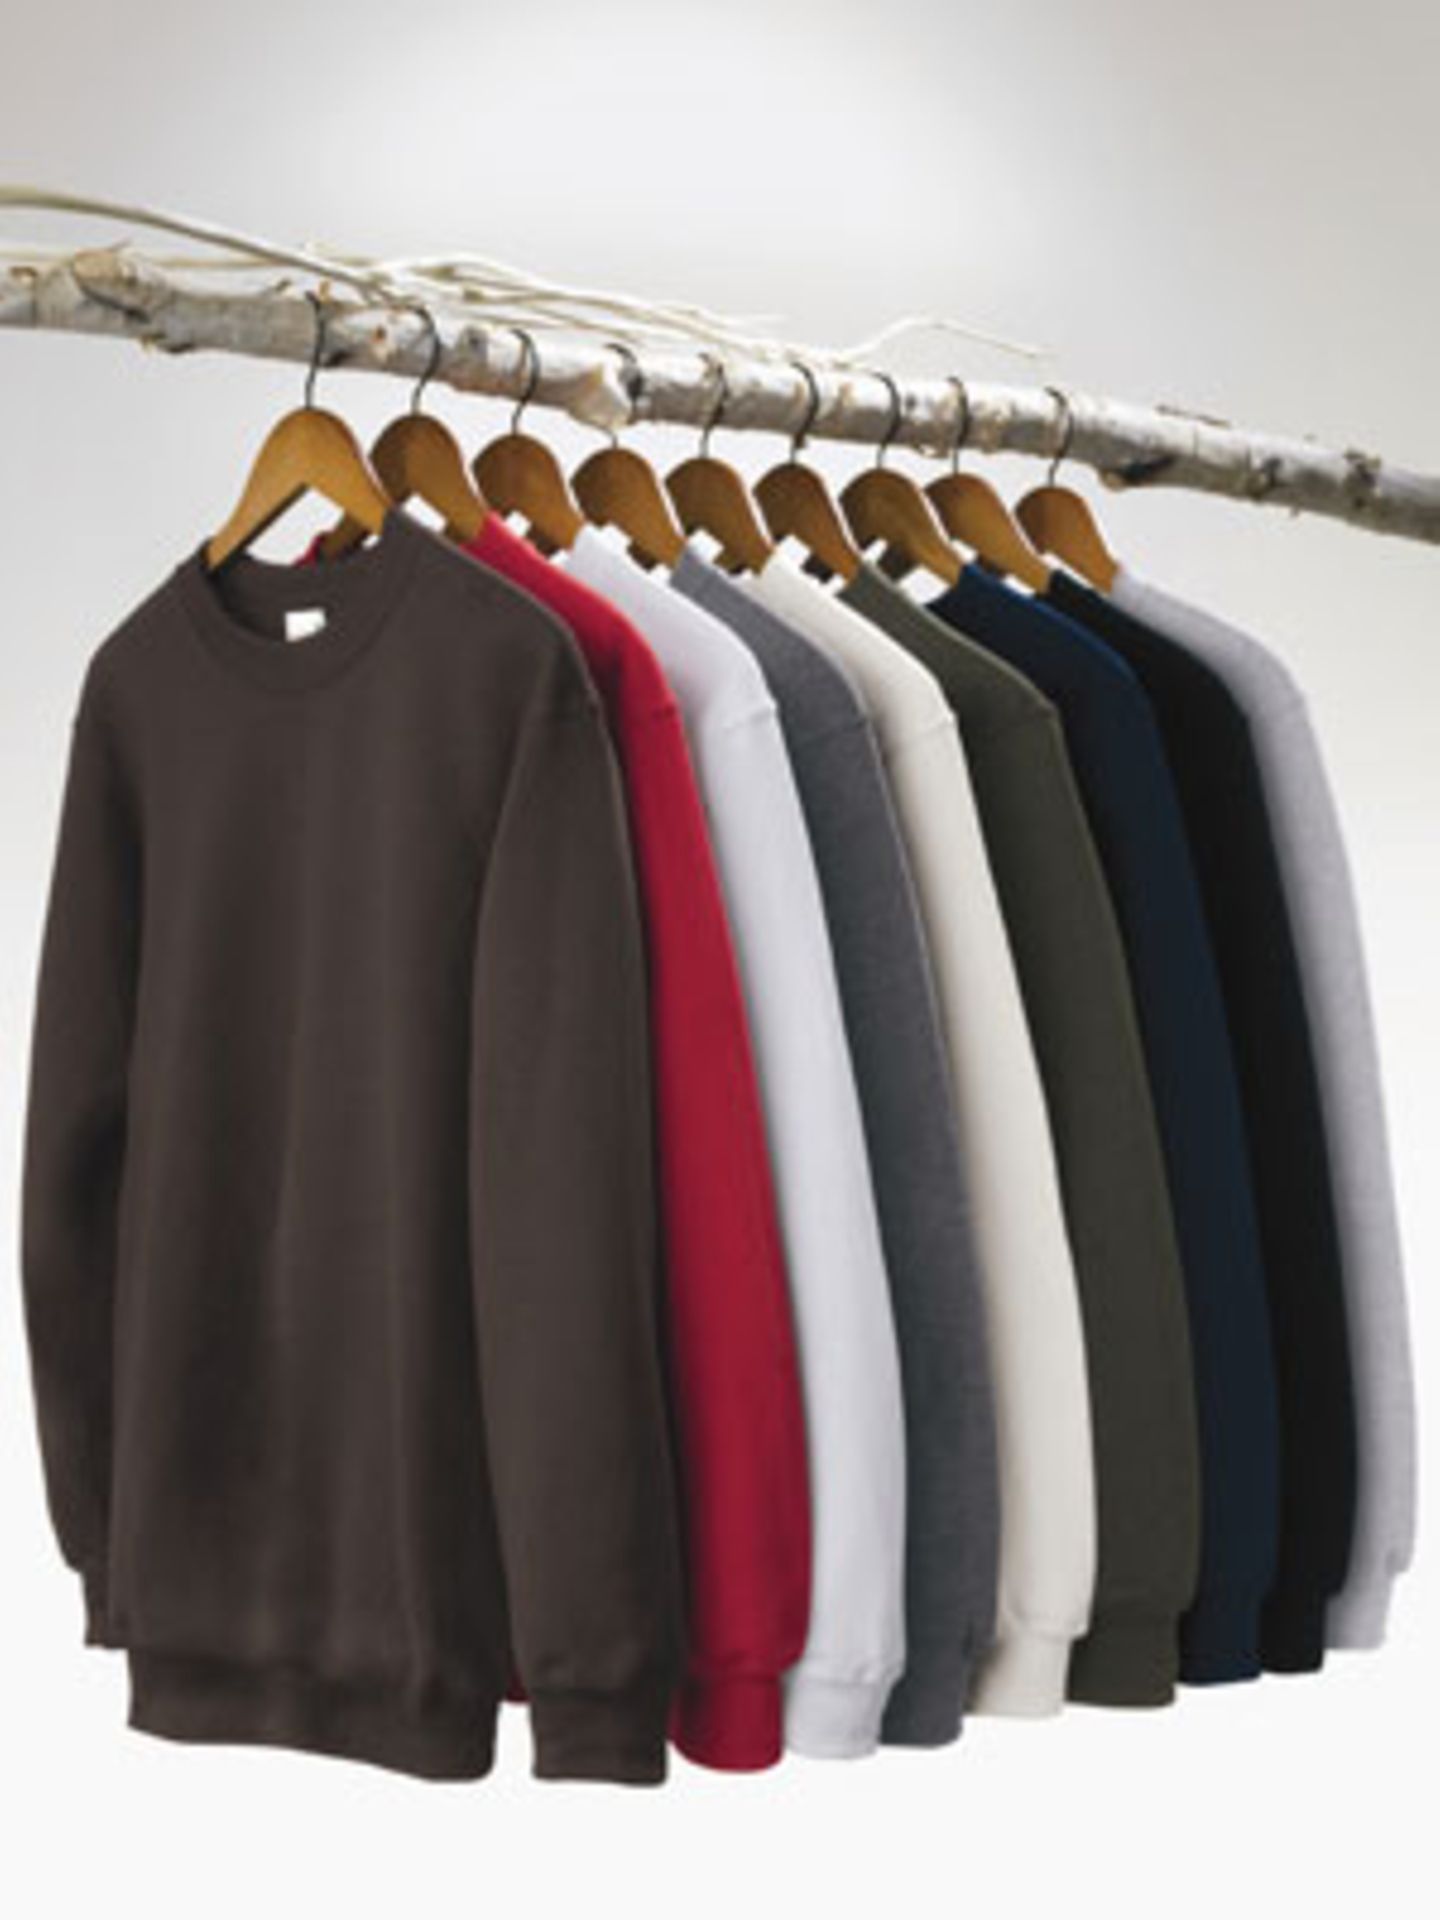 Die unisex Sweatshirts von Anvil bestehen aus 55% zertifiziert organischer Baumwolle und 45% recycled Polyester (aus PET Flaschen), um 30 Euro